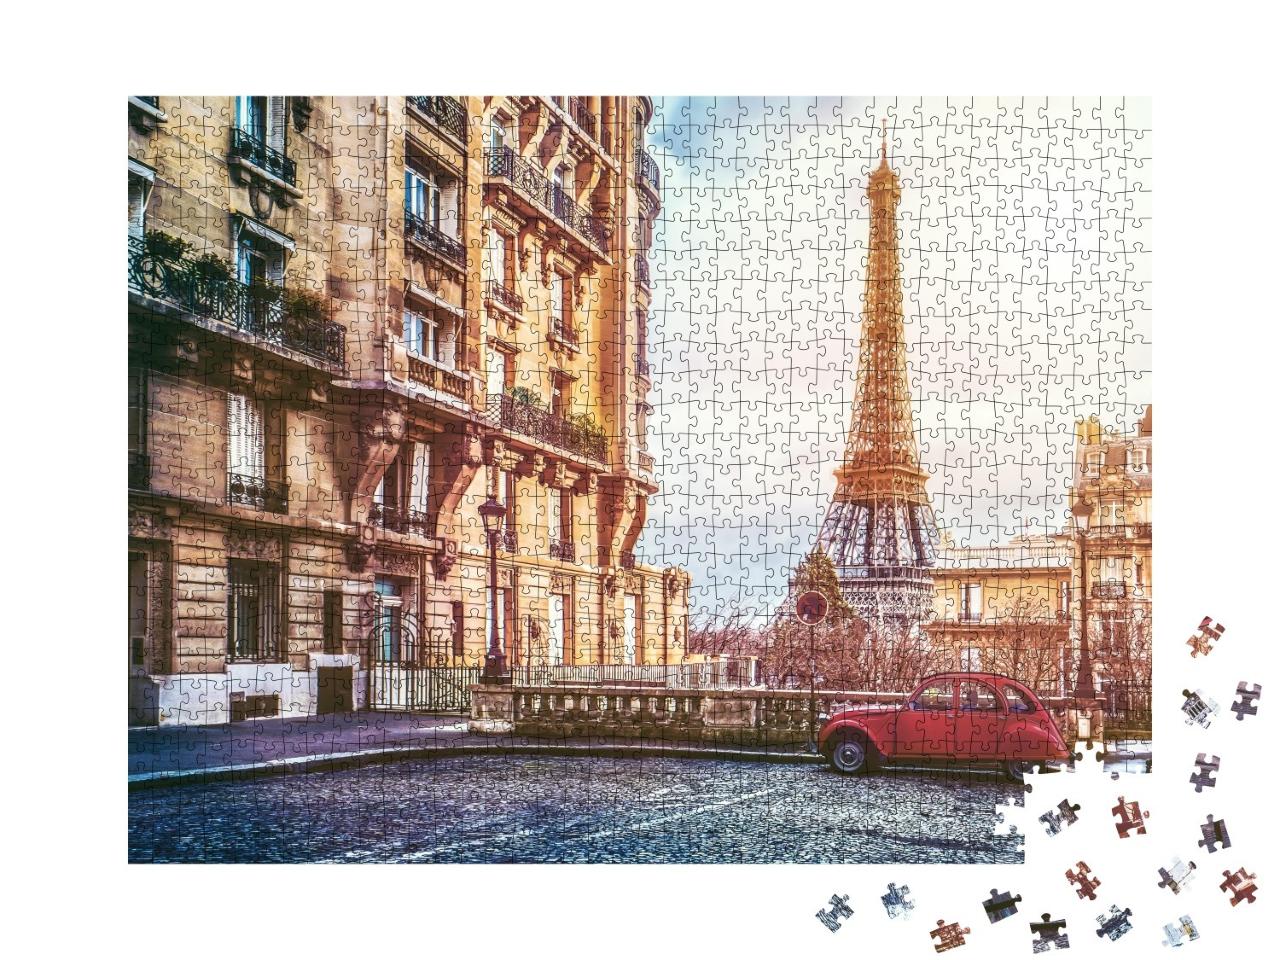 Puzzle de 1000 pièces « Rue de Paris avec vue sur la célèbre Tour Eiffel »